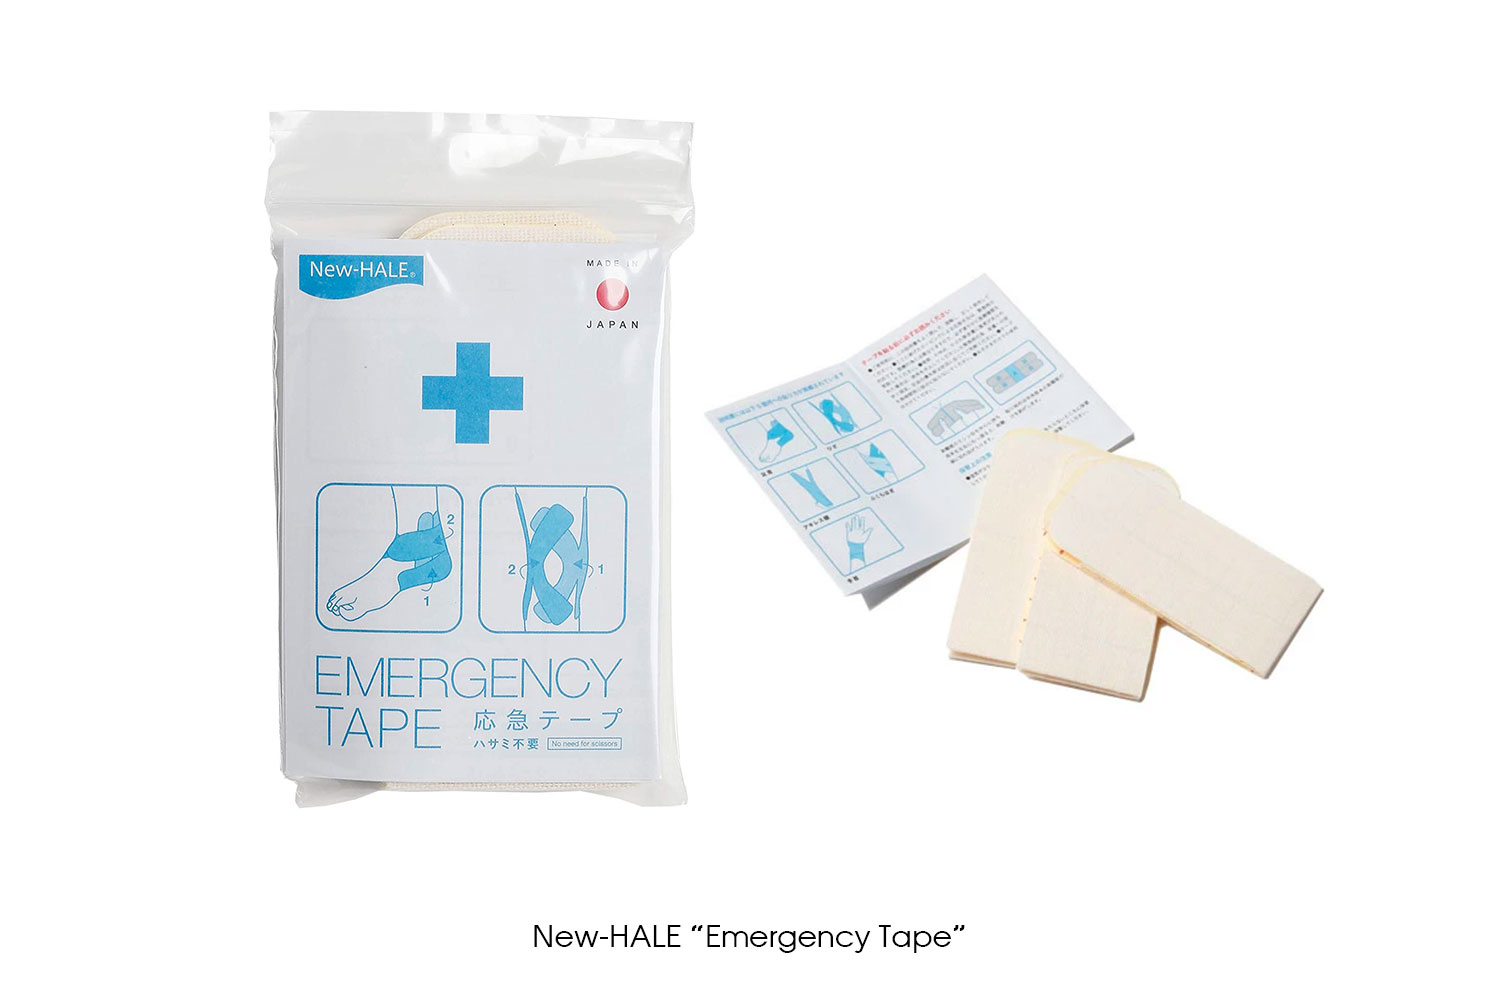 New-HALE "Emergency Tape"